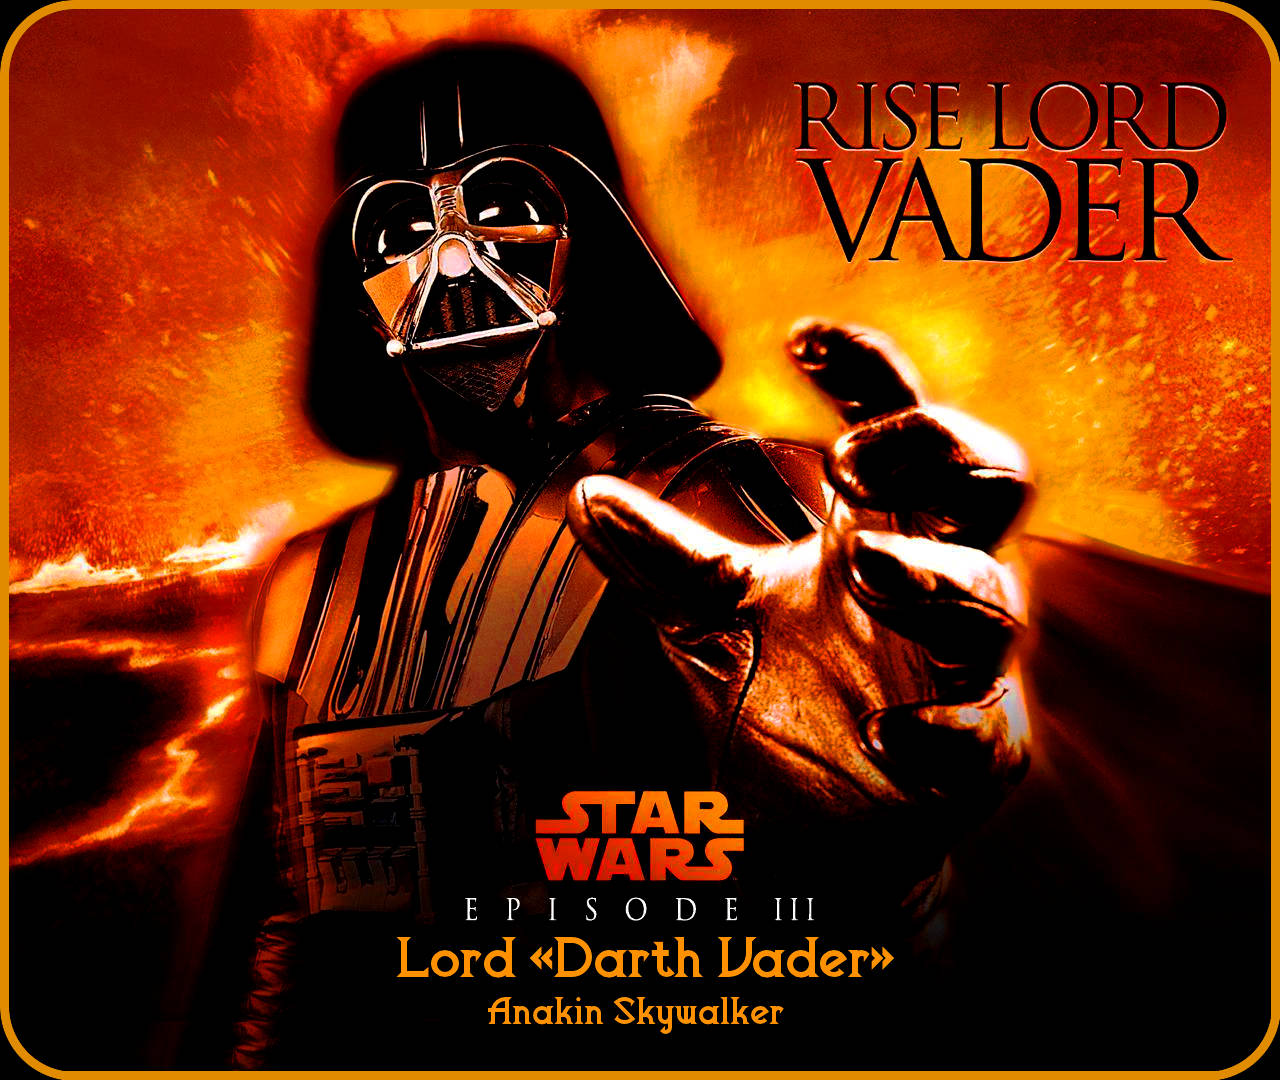 Cool Star Wars Anakin Skywalker Darth Vader